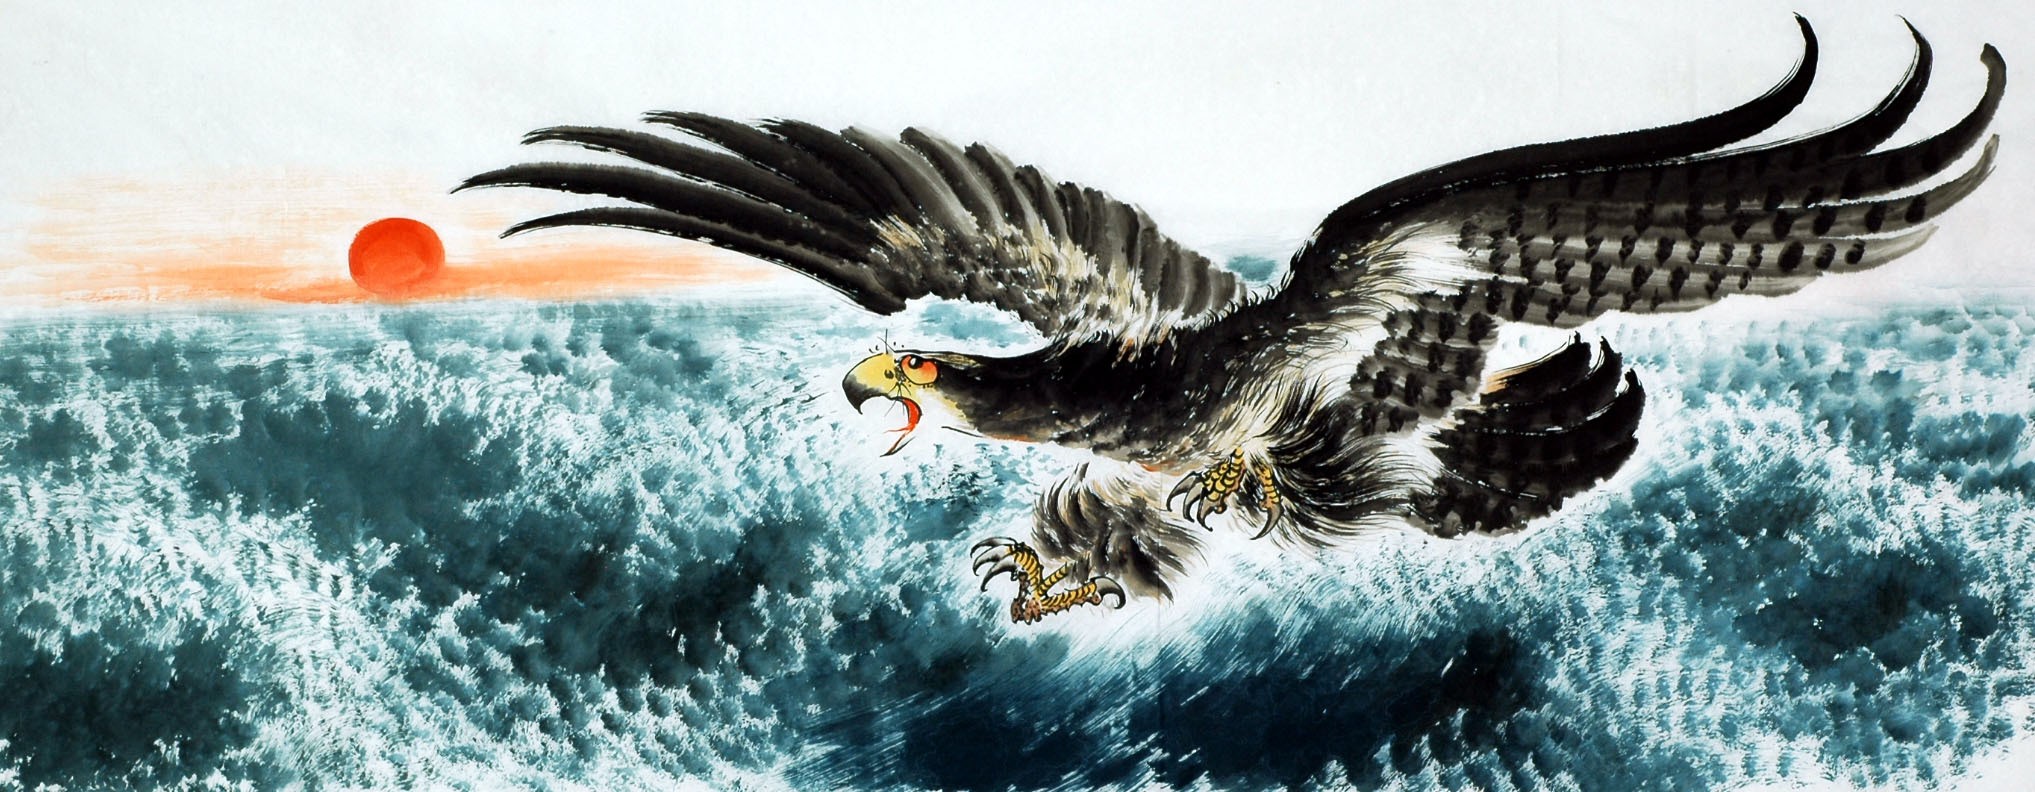 Chinese Eagle Painting - CNAG007799